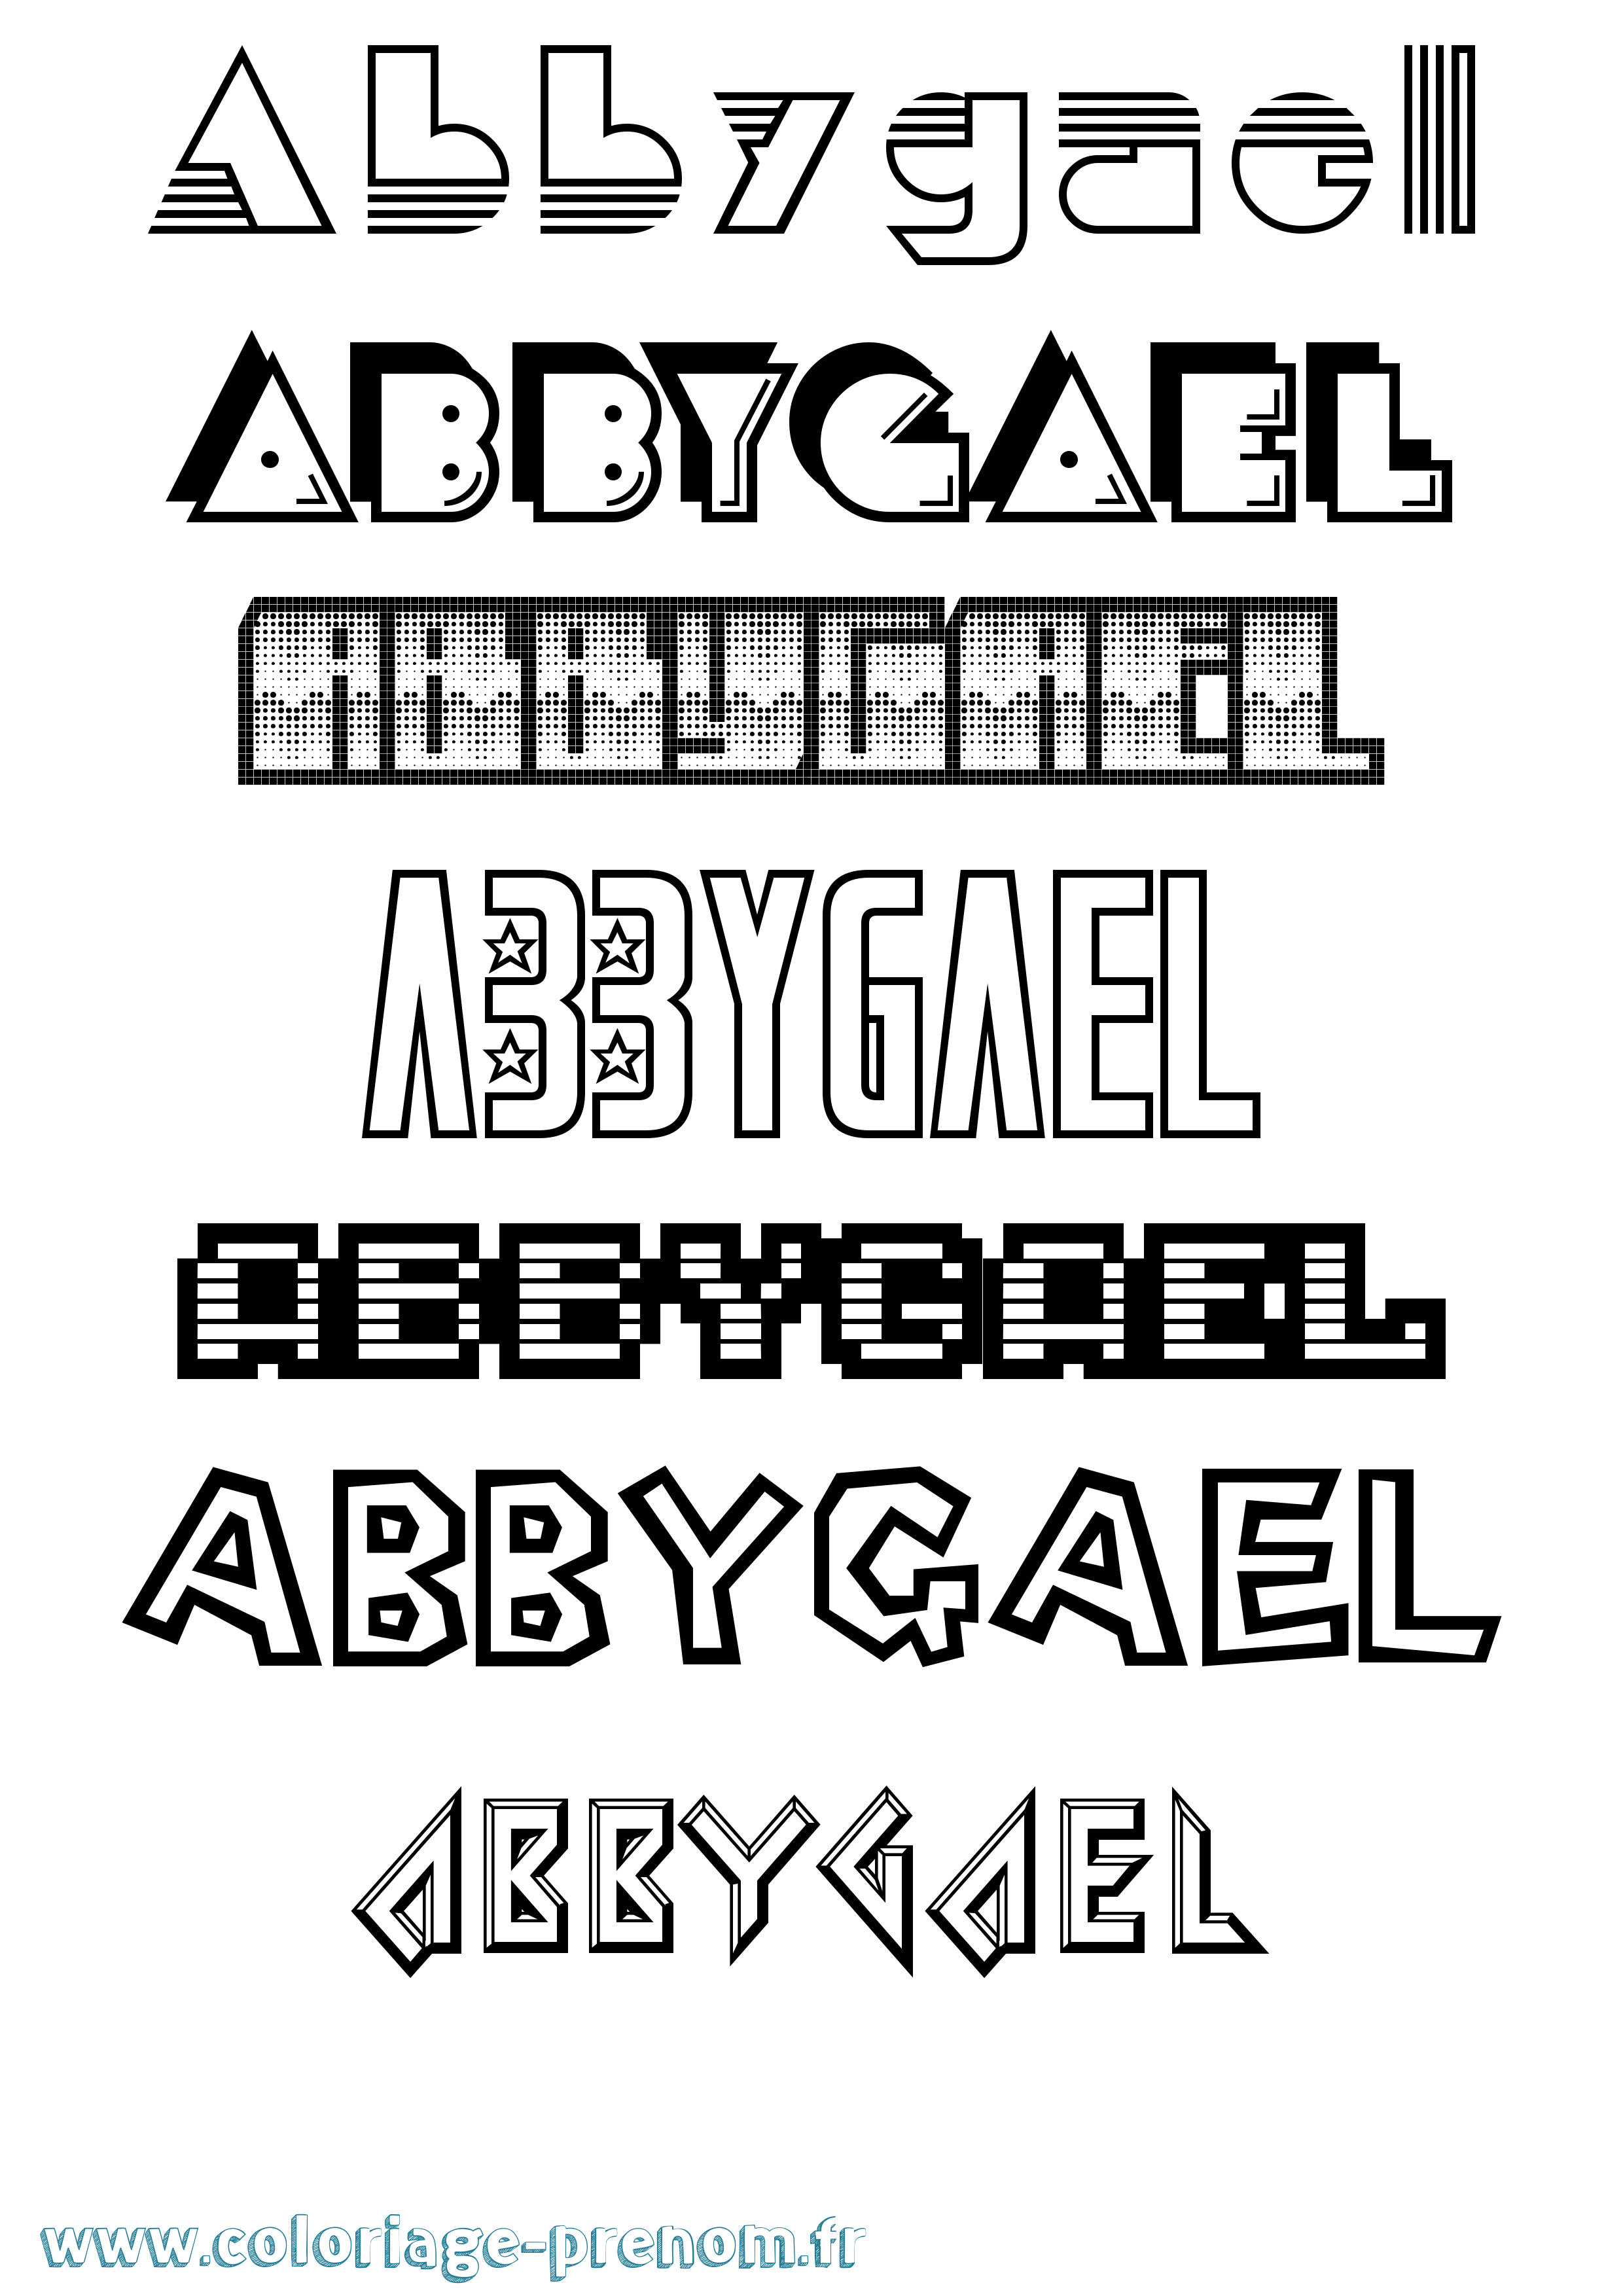 Coloriage prénom Abbygael Jeux Vidéos